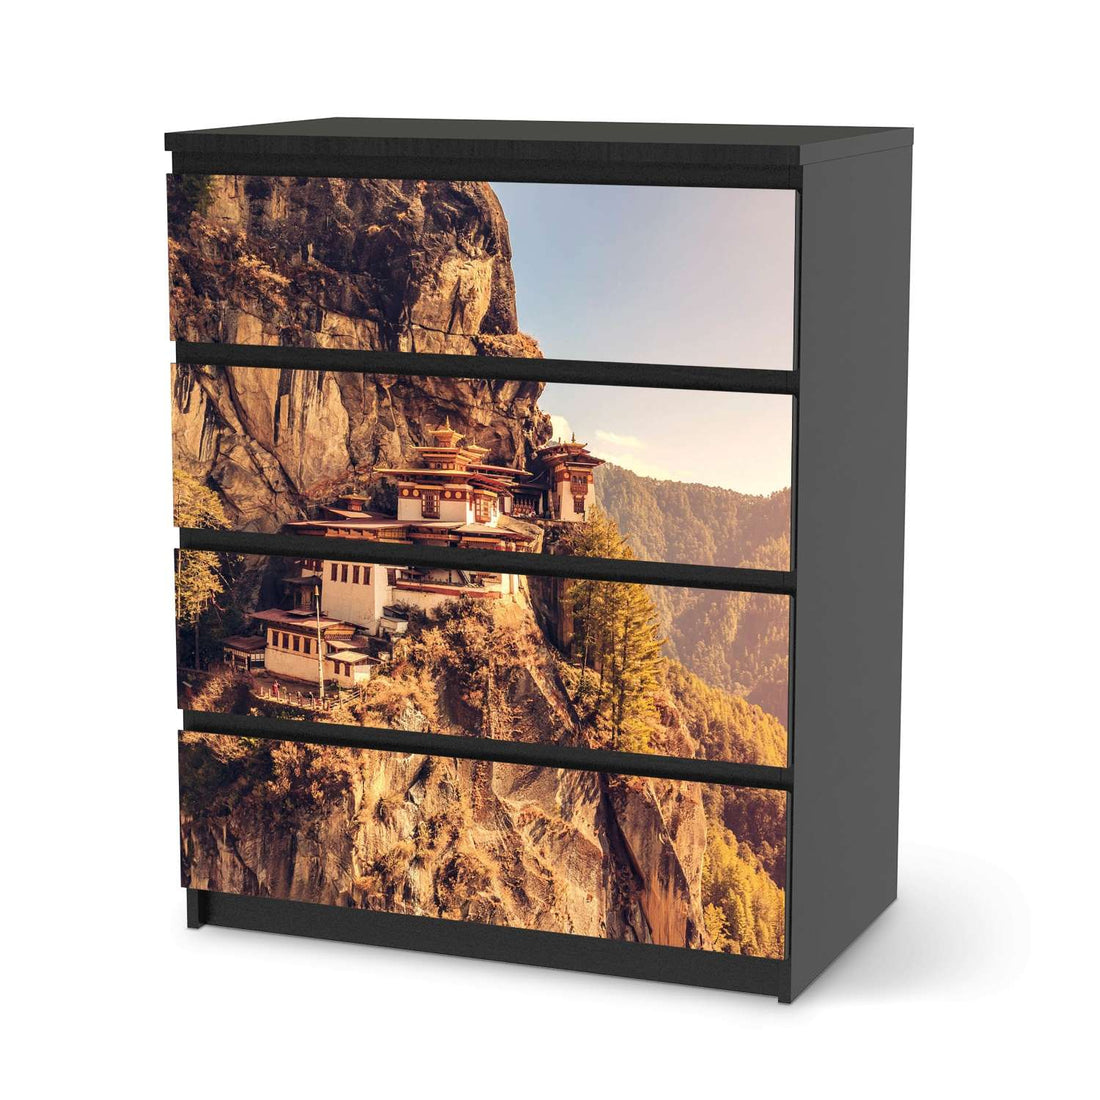 Folie für Möbel Bhutans Paradise - IKEA Malm Kommode 4 Schubladen - schwarz